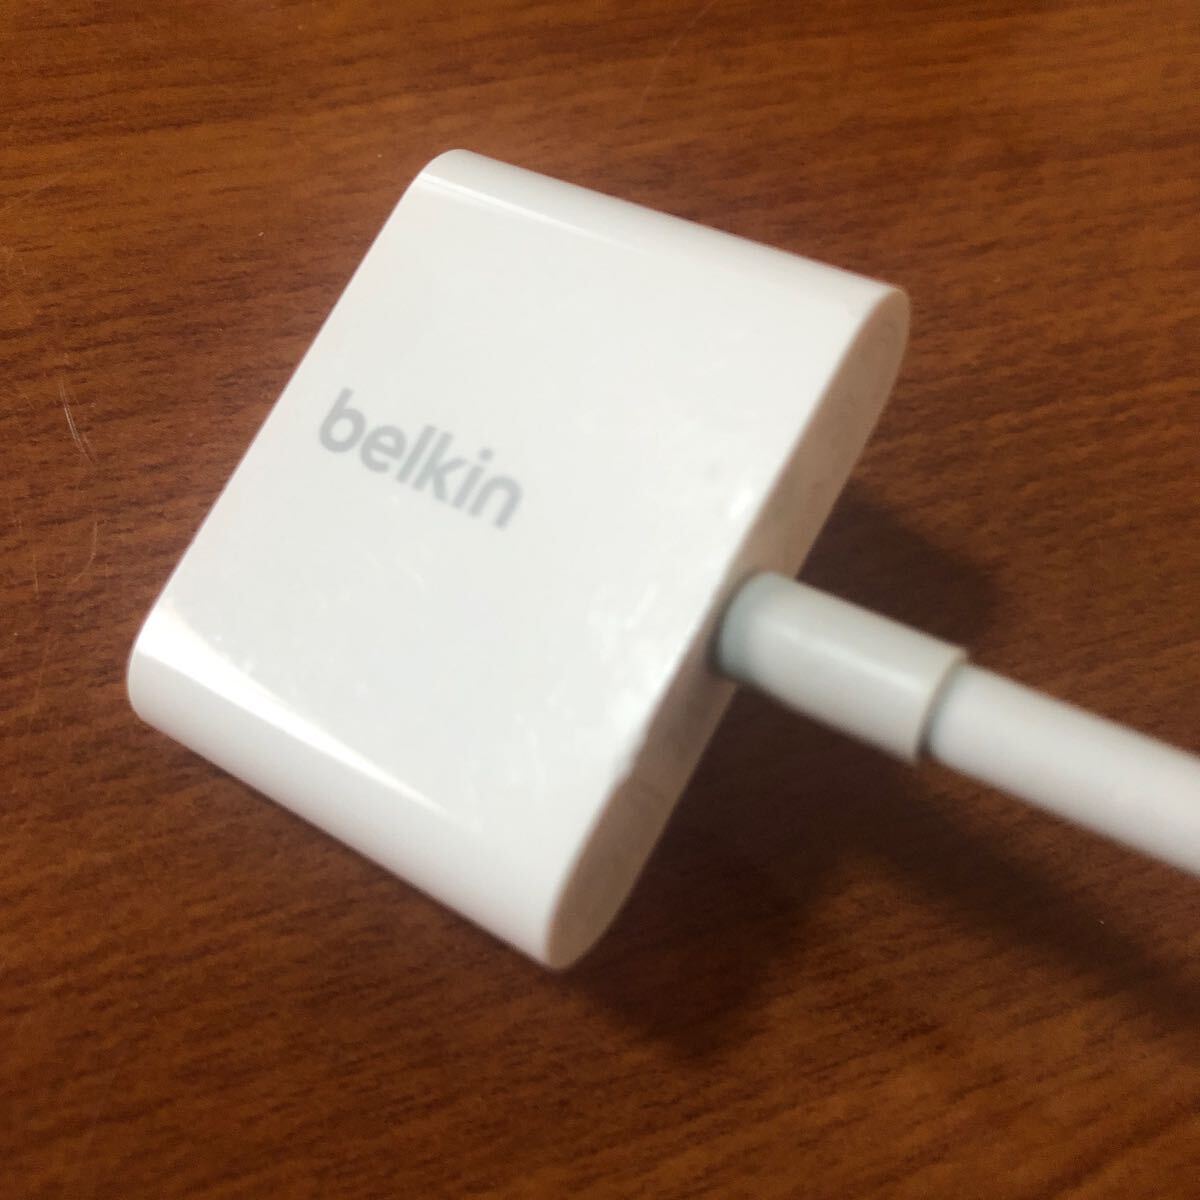 〈送料無料〉Belkin Lightning Audio Charge Rockstar 二股ケーブル デュアルアダプタ 変換アダプタ ベルキン_画像4